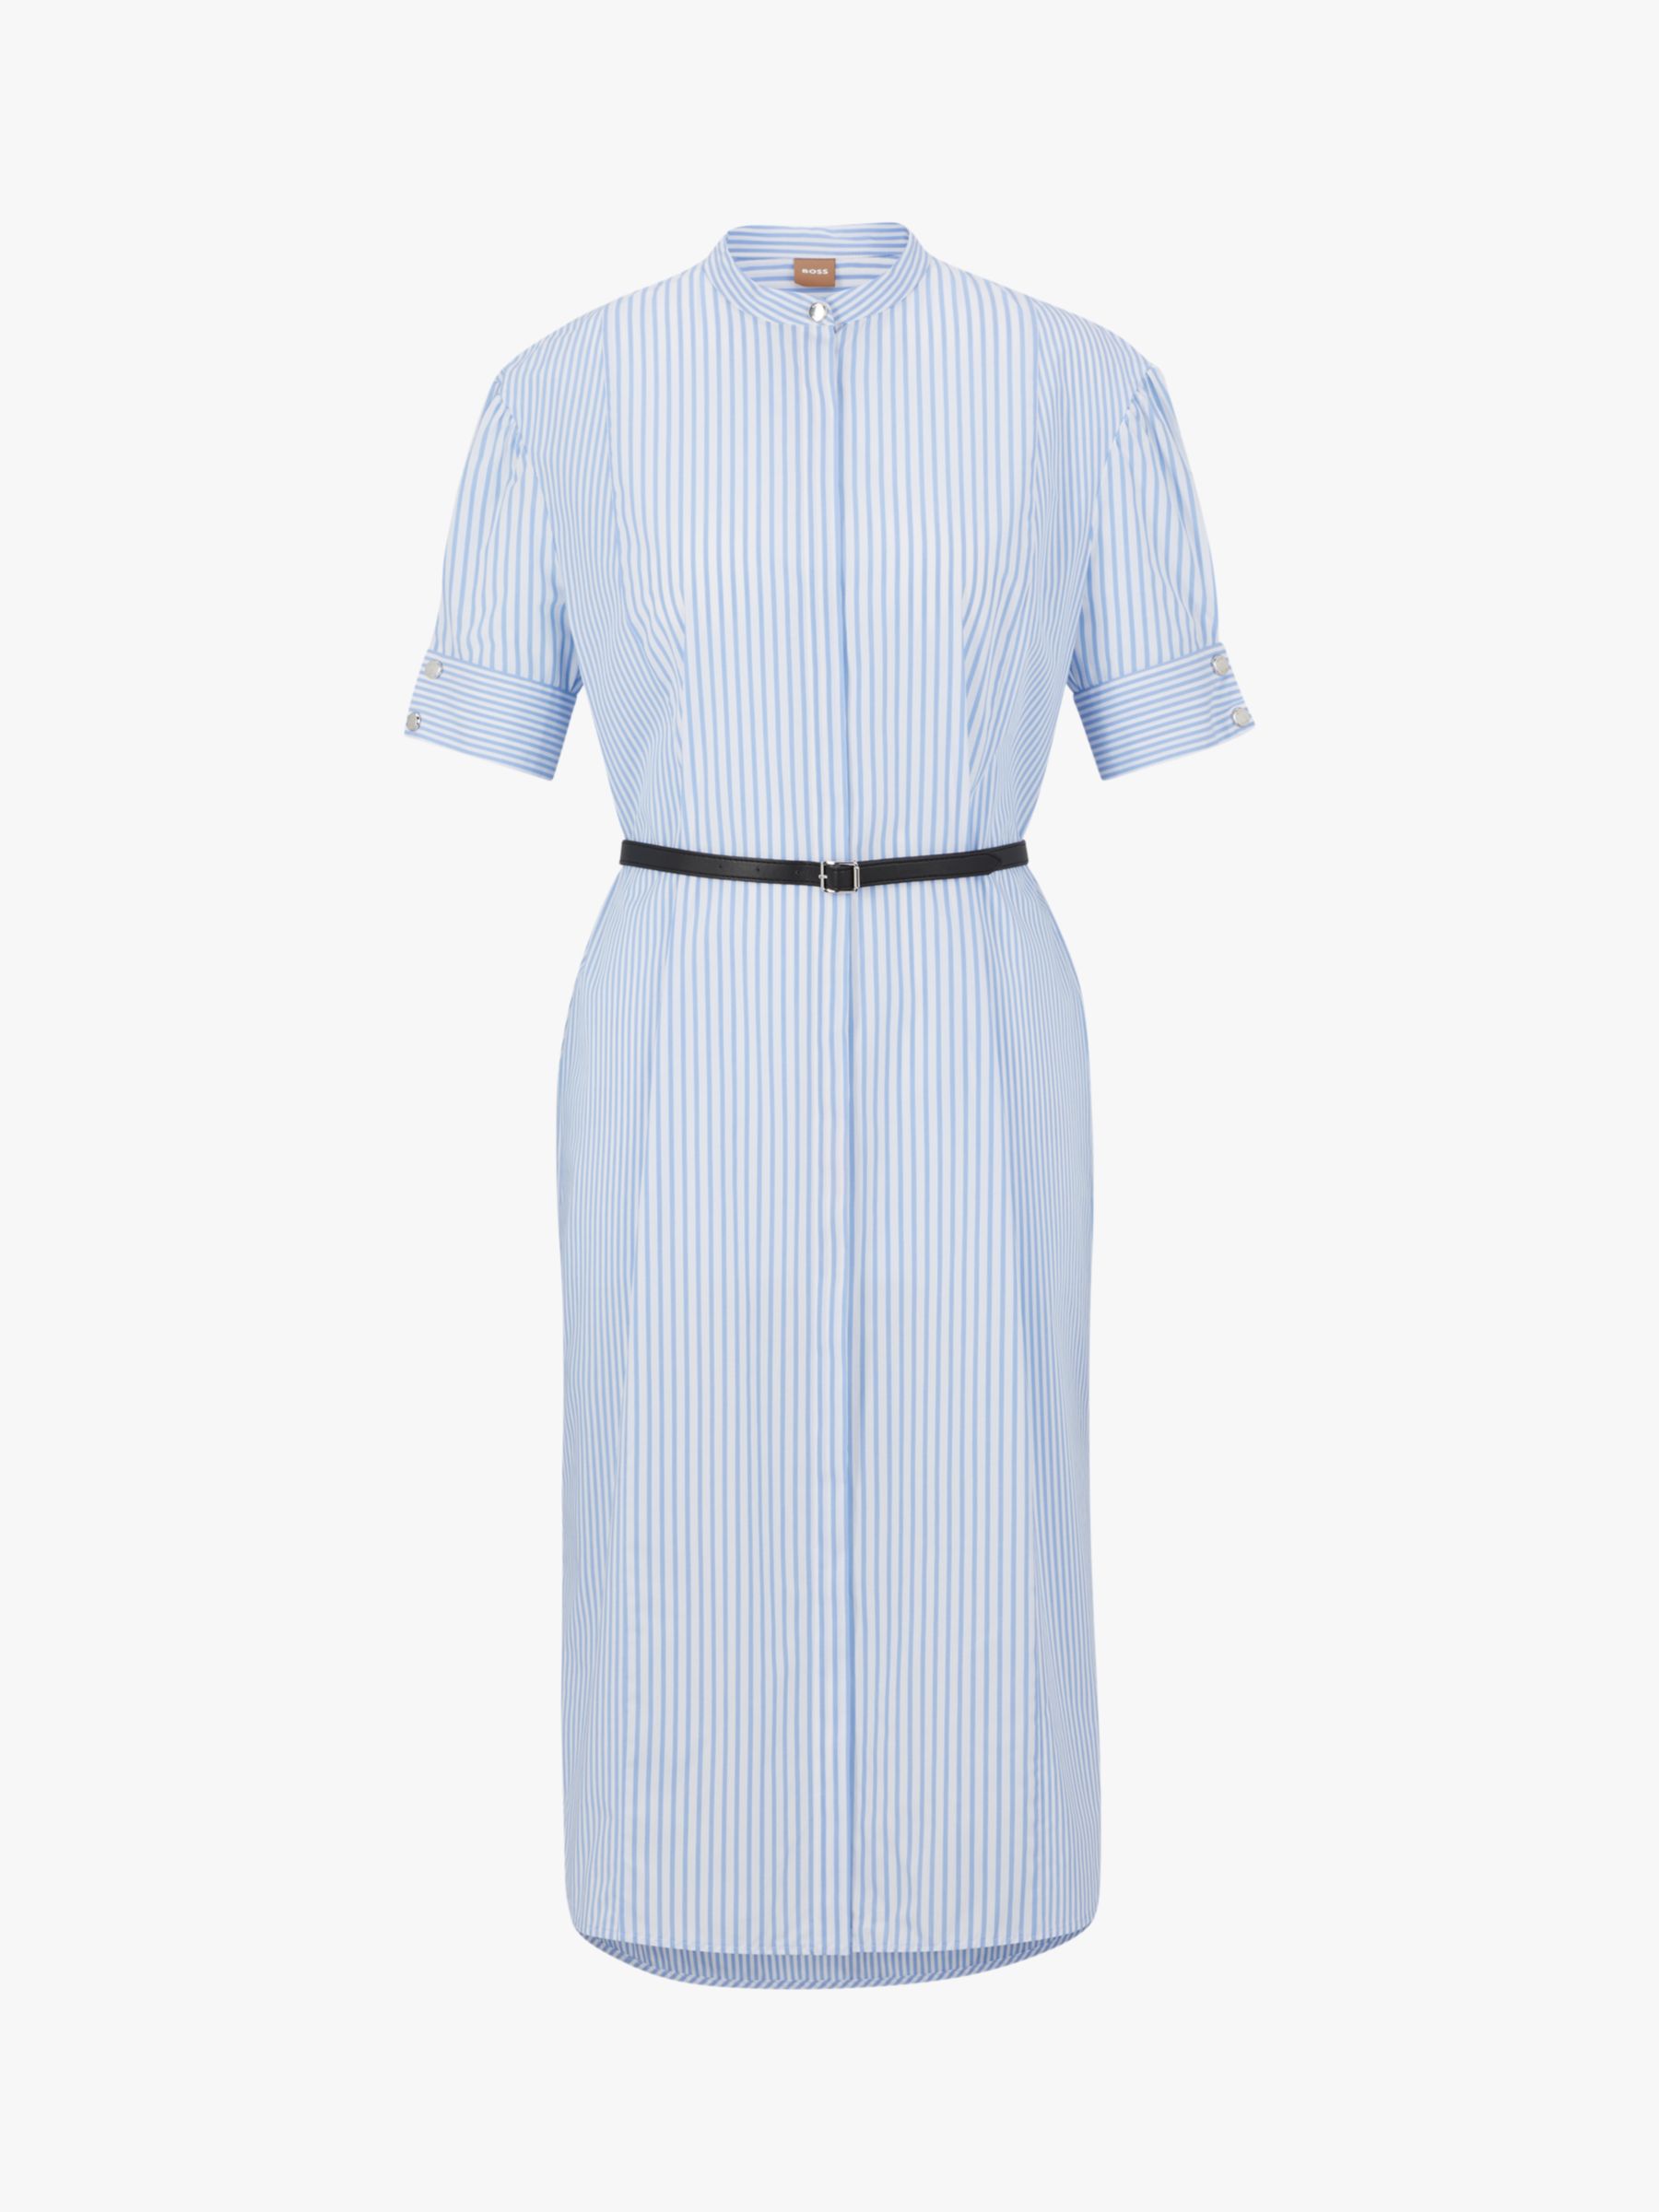 Buy HUGO BOSS Desseni Shirt Dress, White/Light Blue Online at johnlewis.com